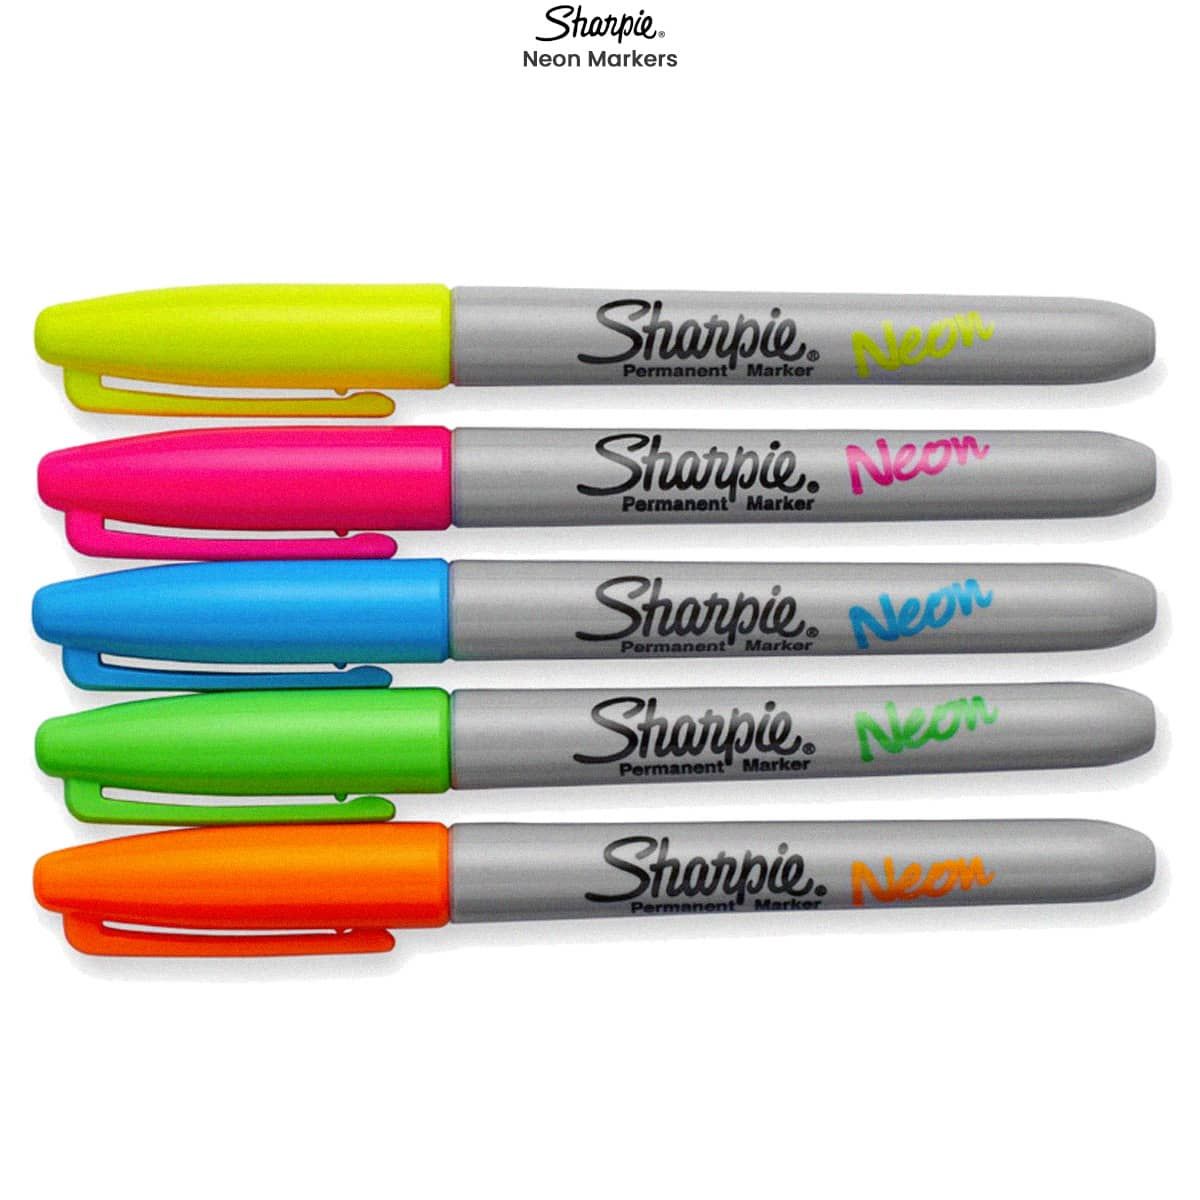 Sharpie Pens: Pros VS Cons (Pen Review) 